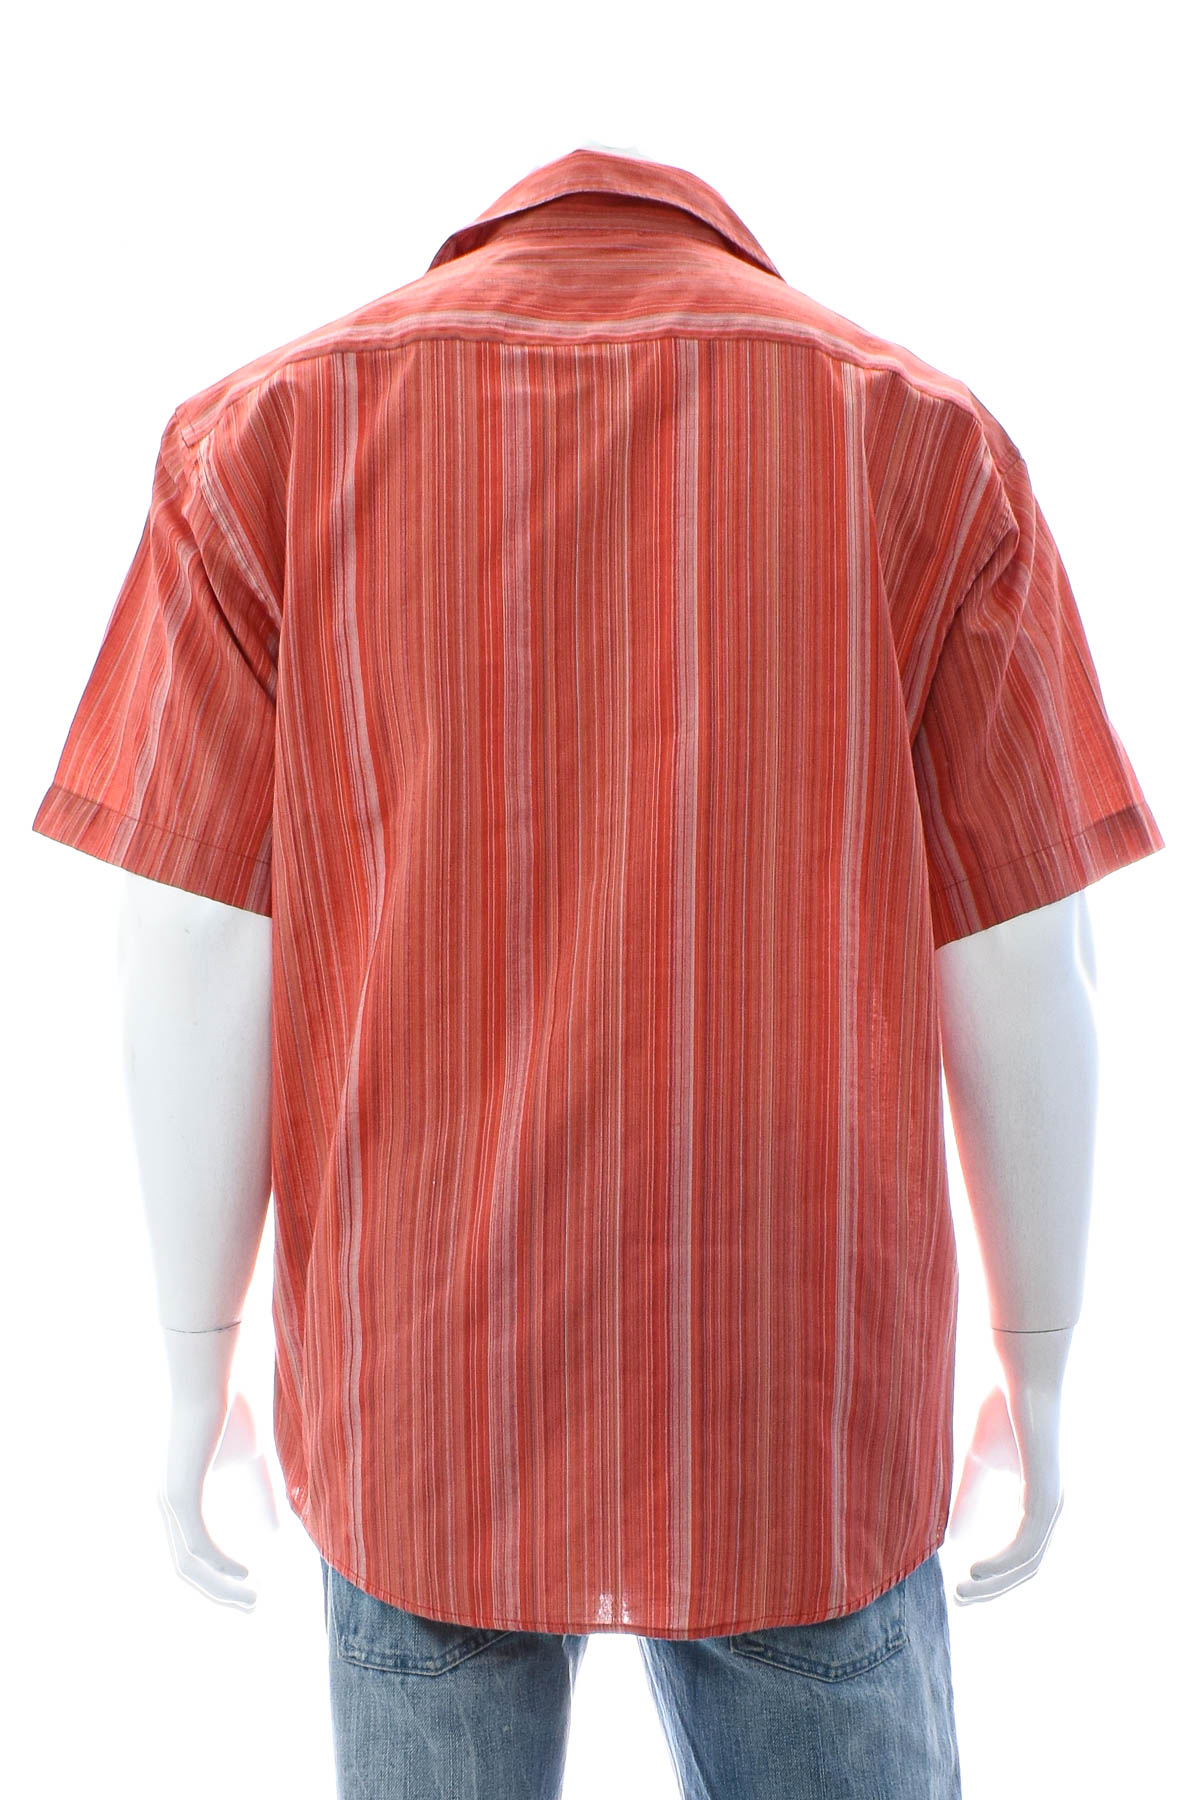 Ανδρικό πουκάμισο - Torelli - 1